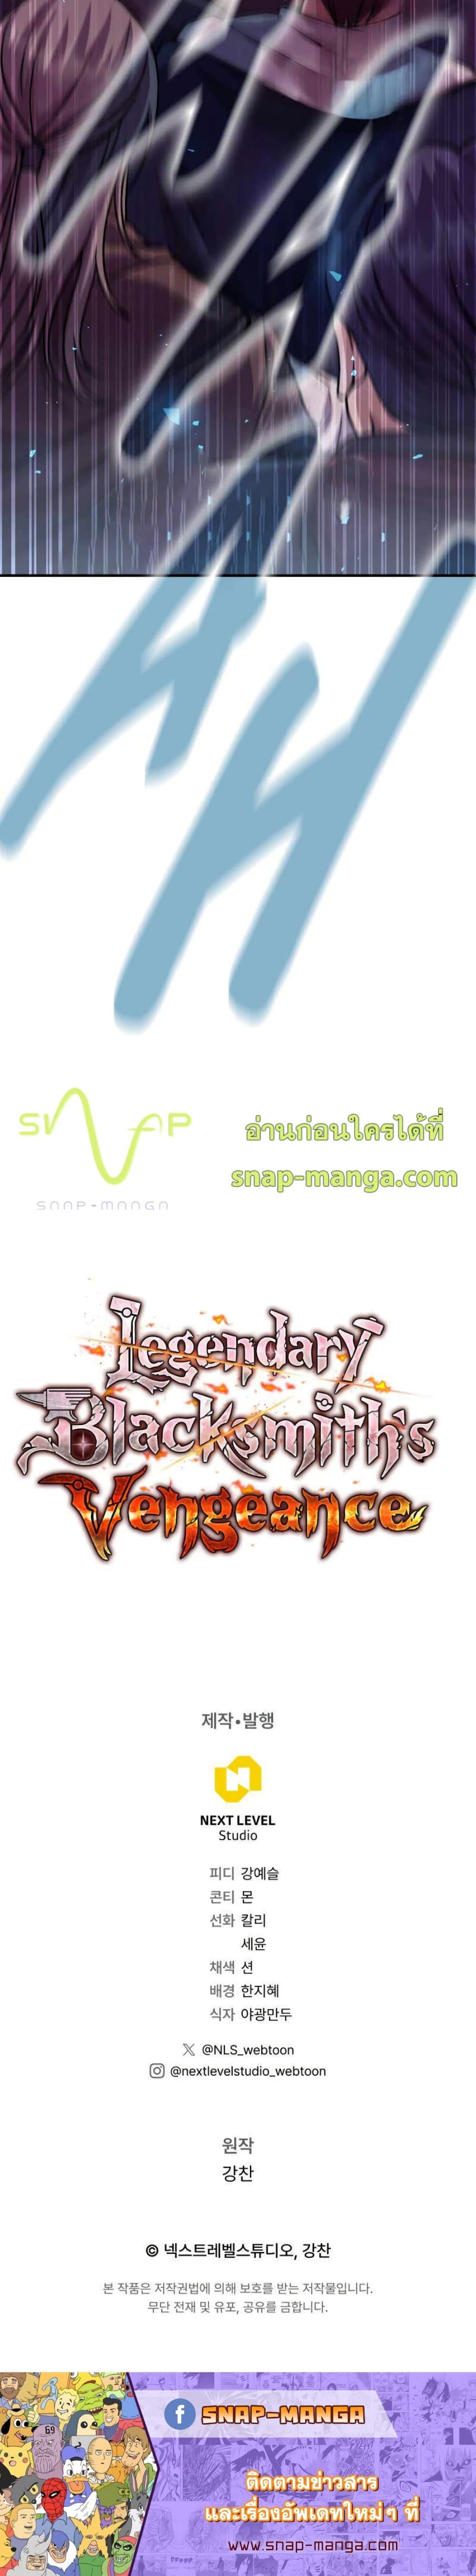 Legendary Blacksmith’s Vengeance 27-27